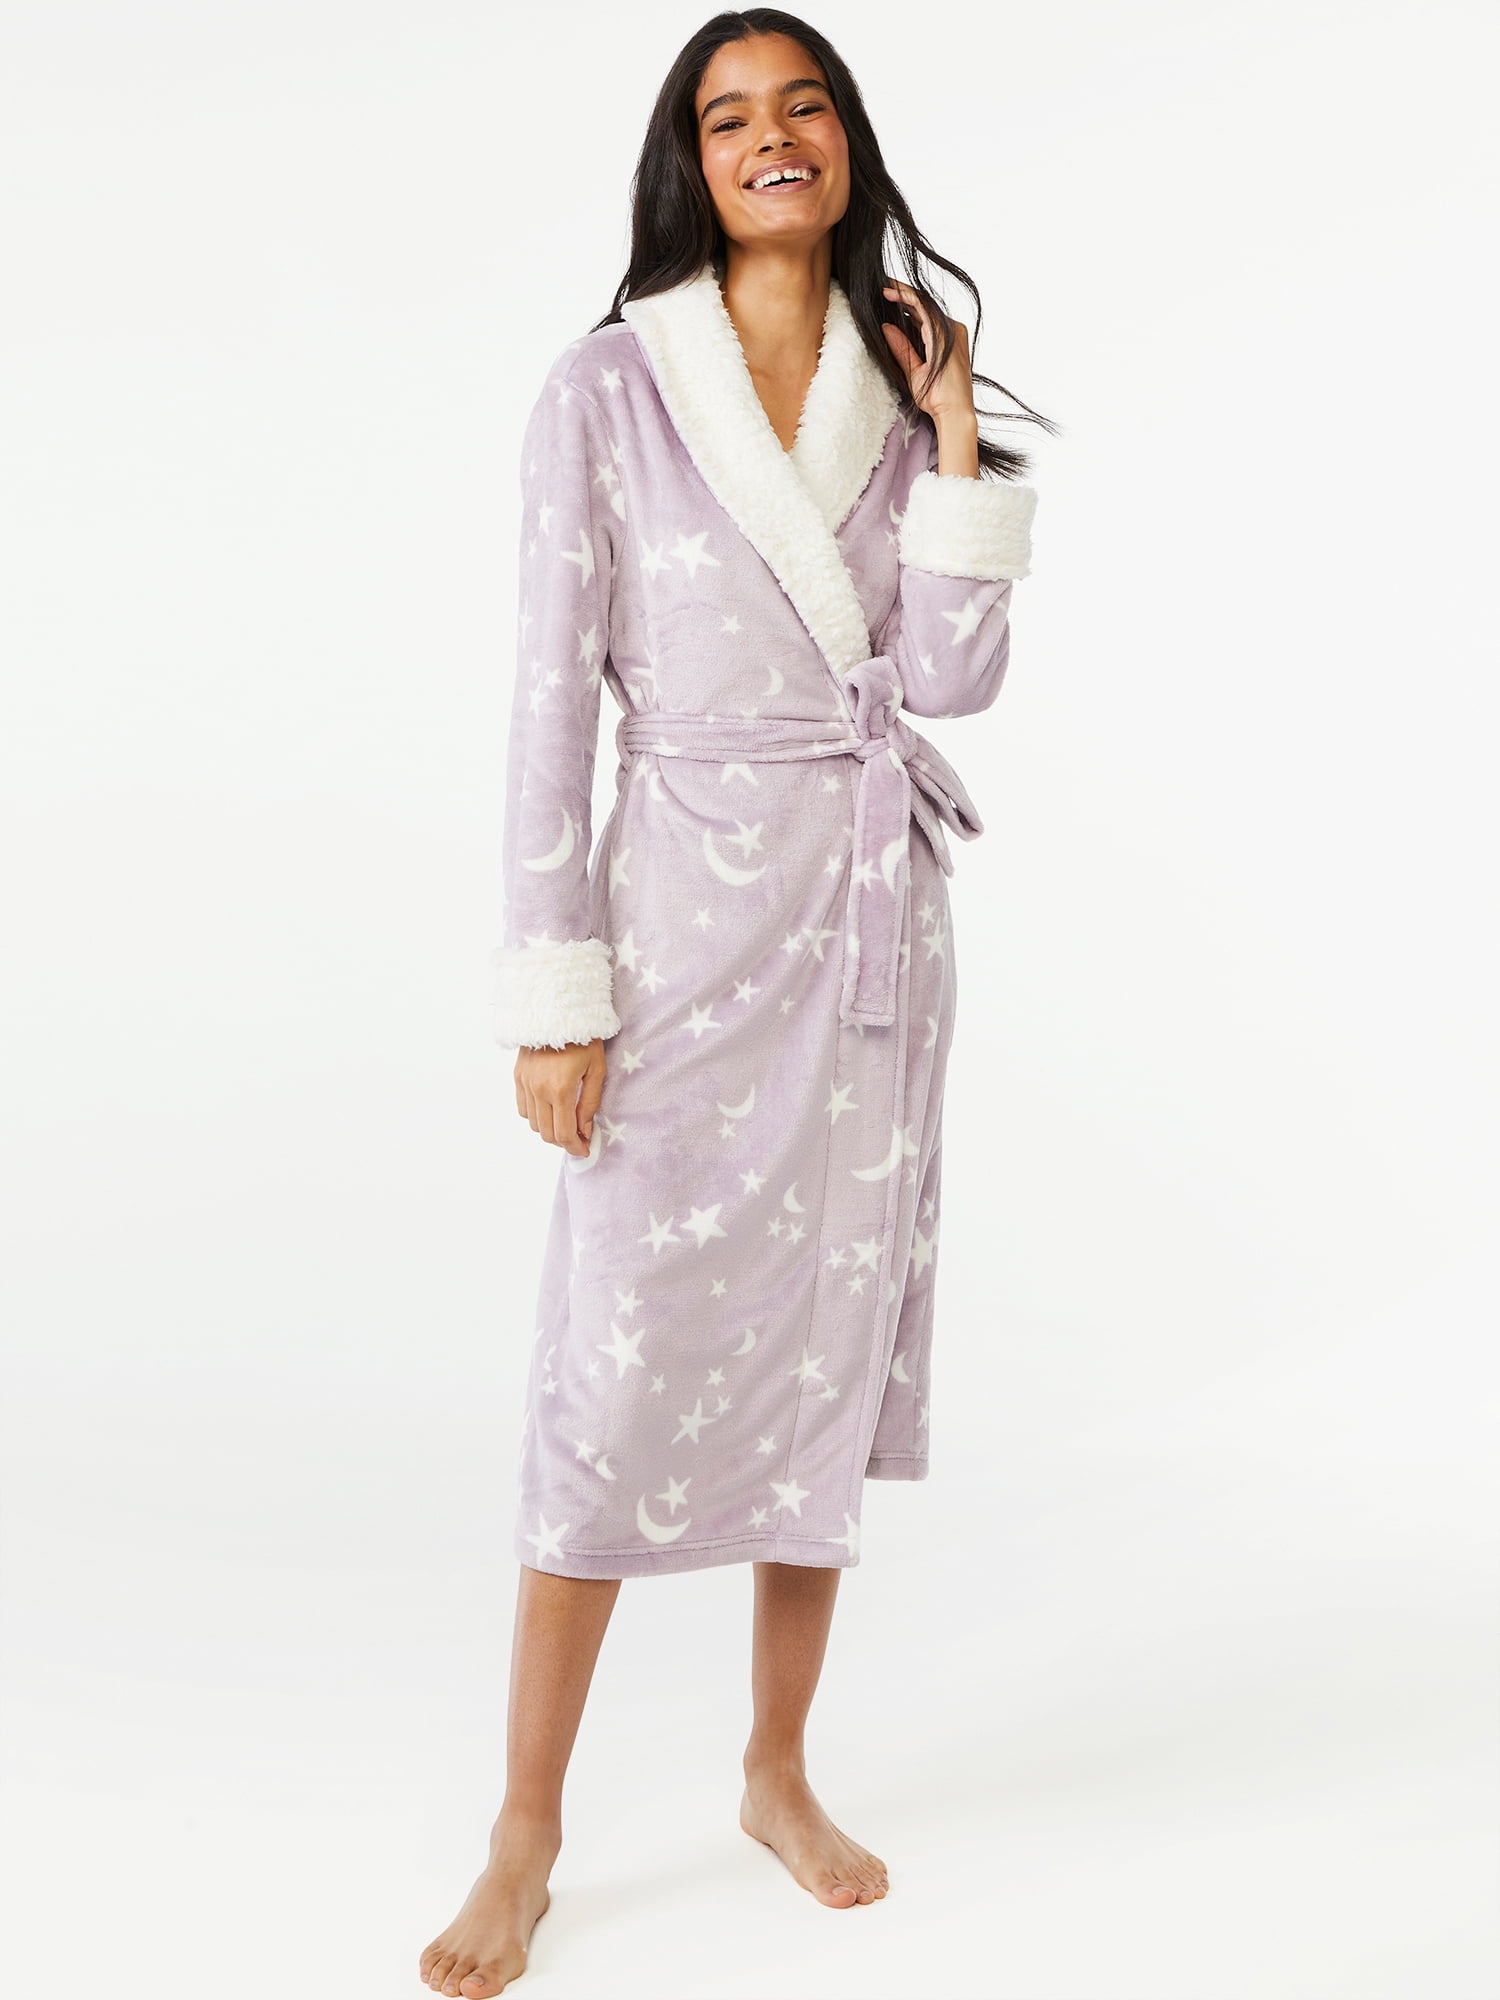 Joyspun Women's Plush Sleep Robe, Sizes S to 3X 